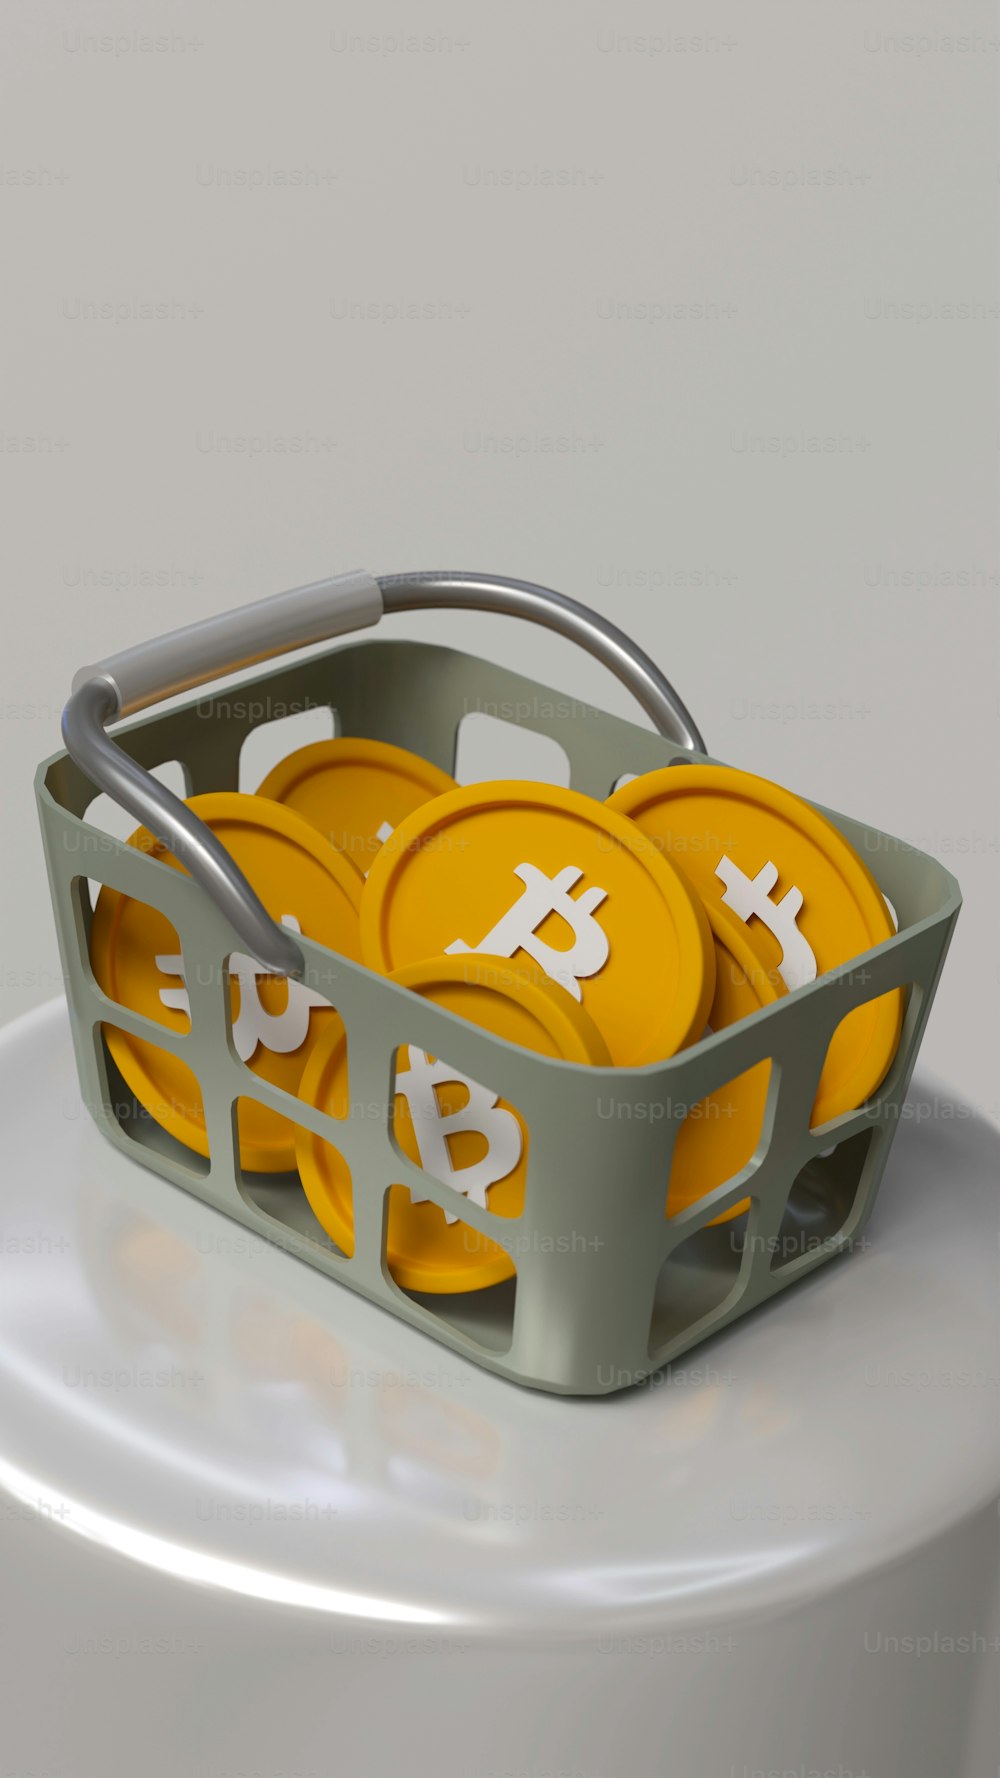 Un panier rempli de bitcoins jaunes assis sur une table blanche